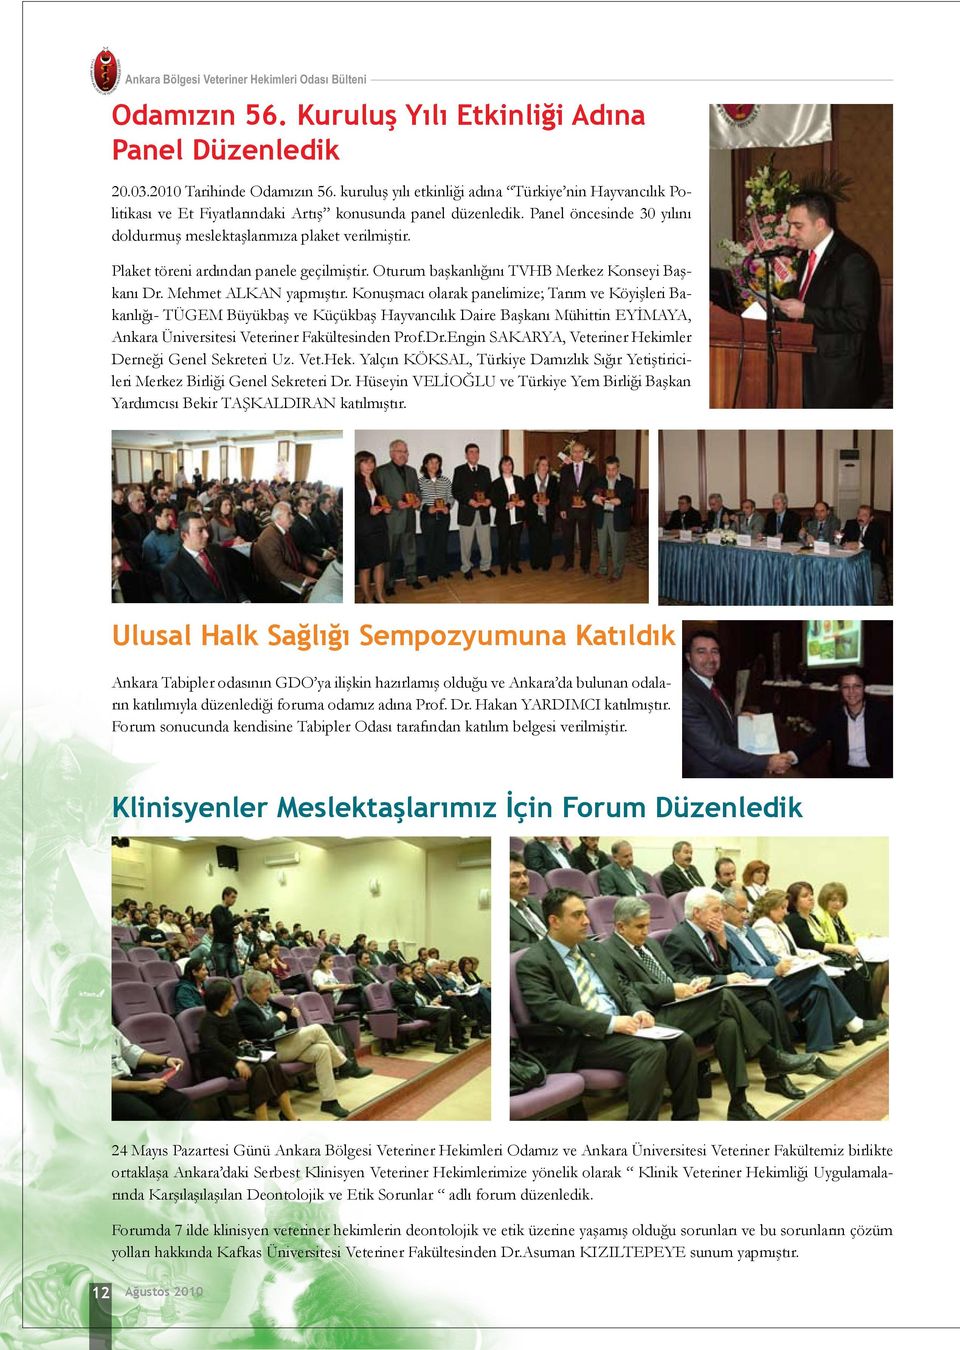 Plaket töreni ardından panele geçilmiştir. Oturum başkanlığını TVHB Merkez Konseyi Başkanı Dr. Mehmet ALKAN yapmıştır.